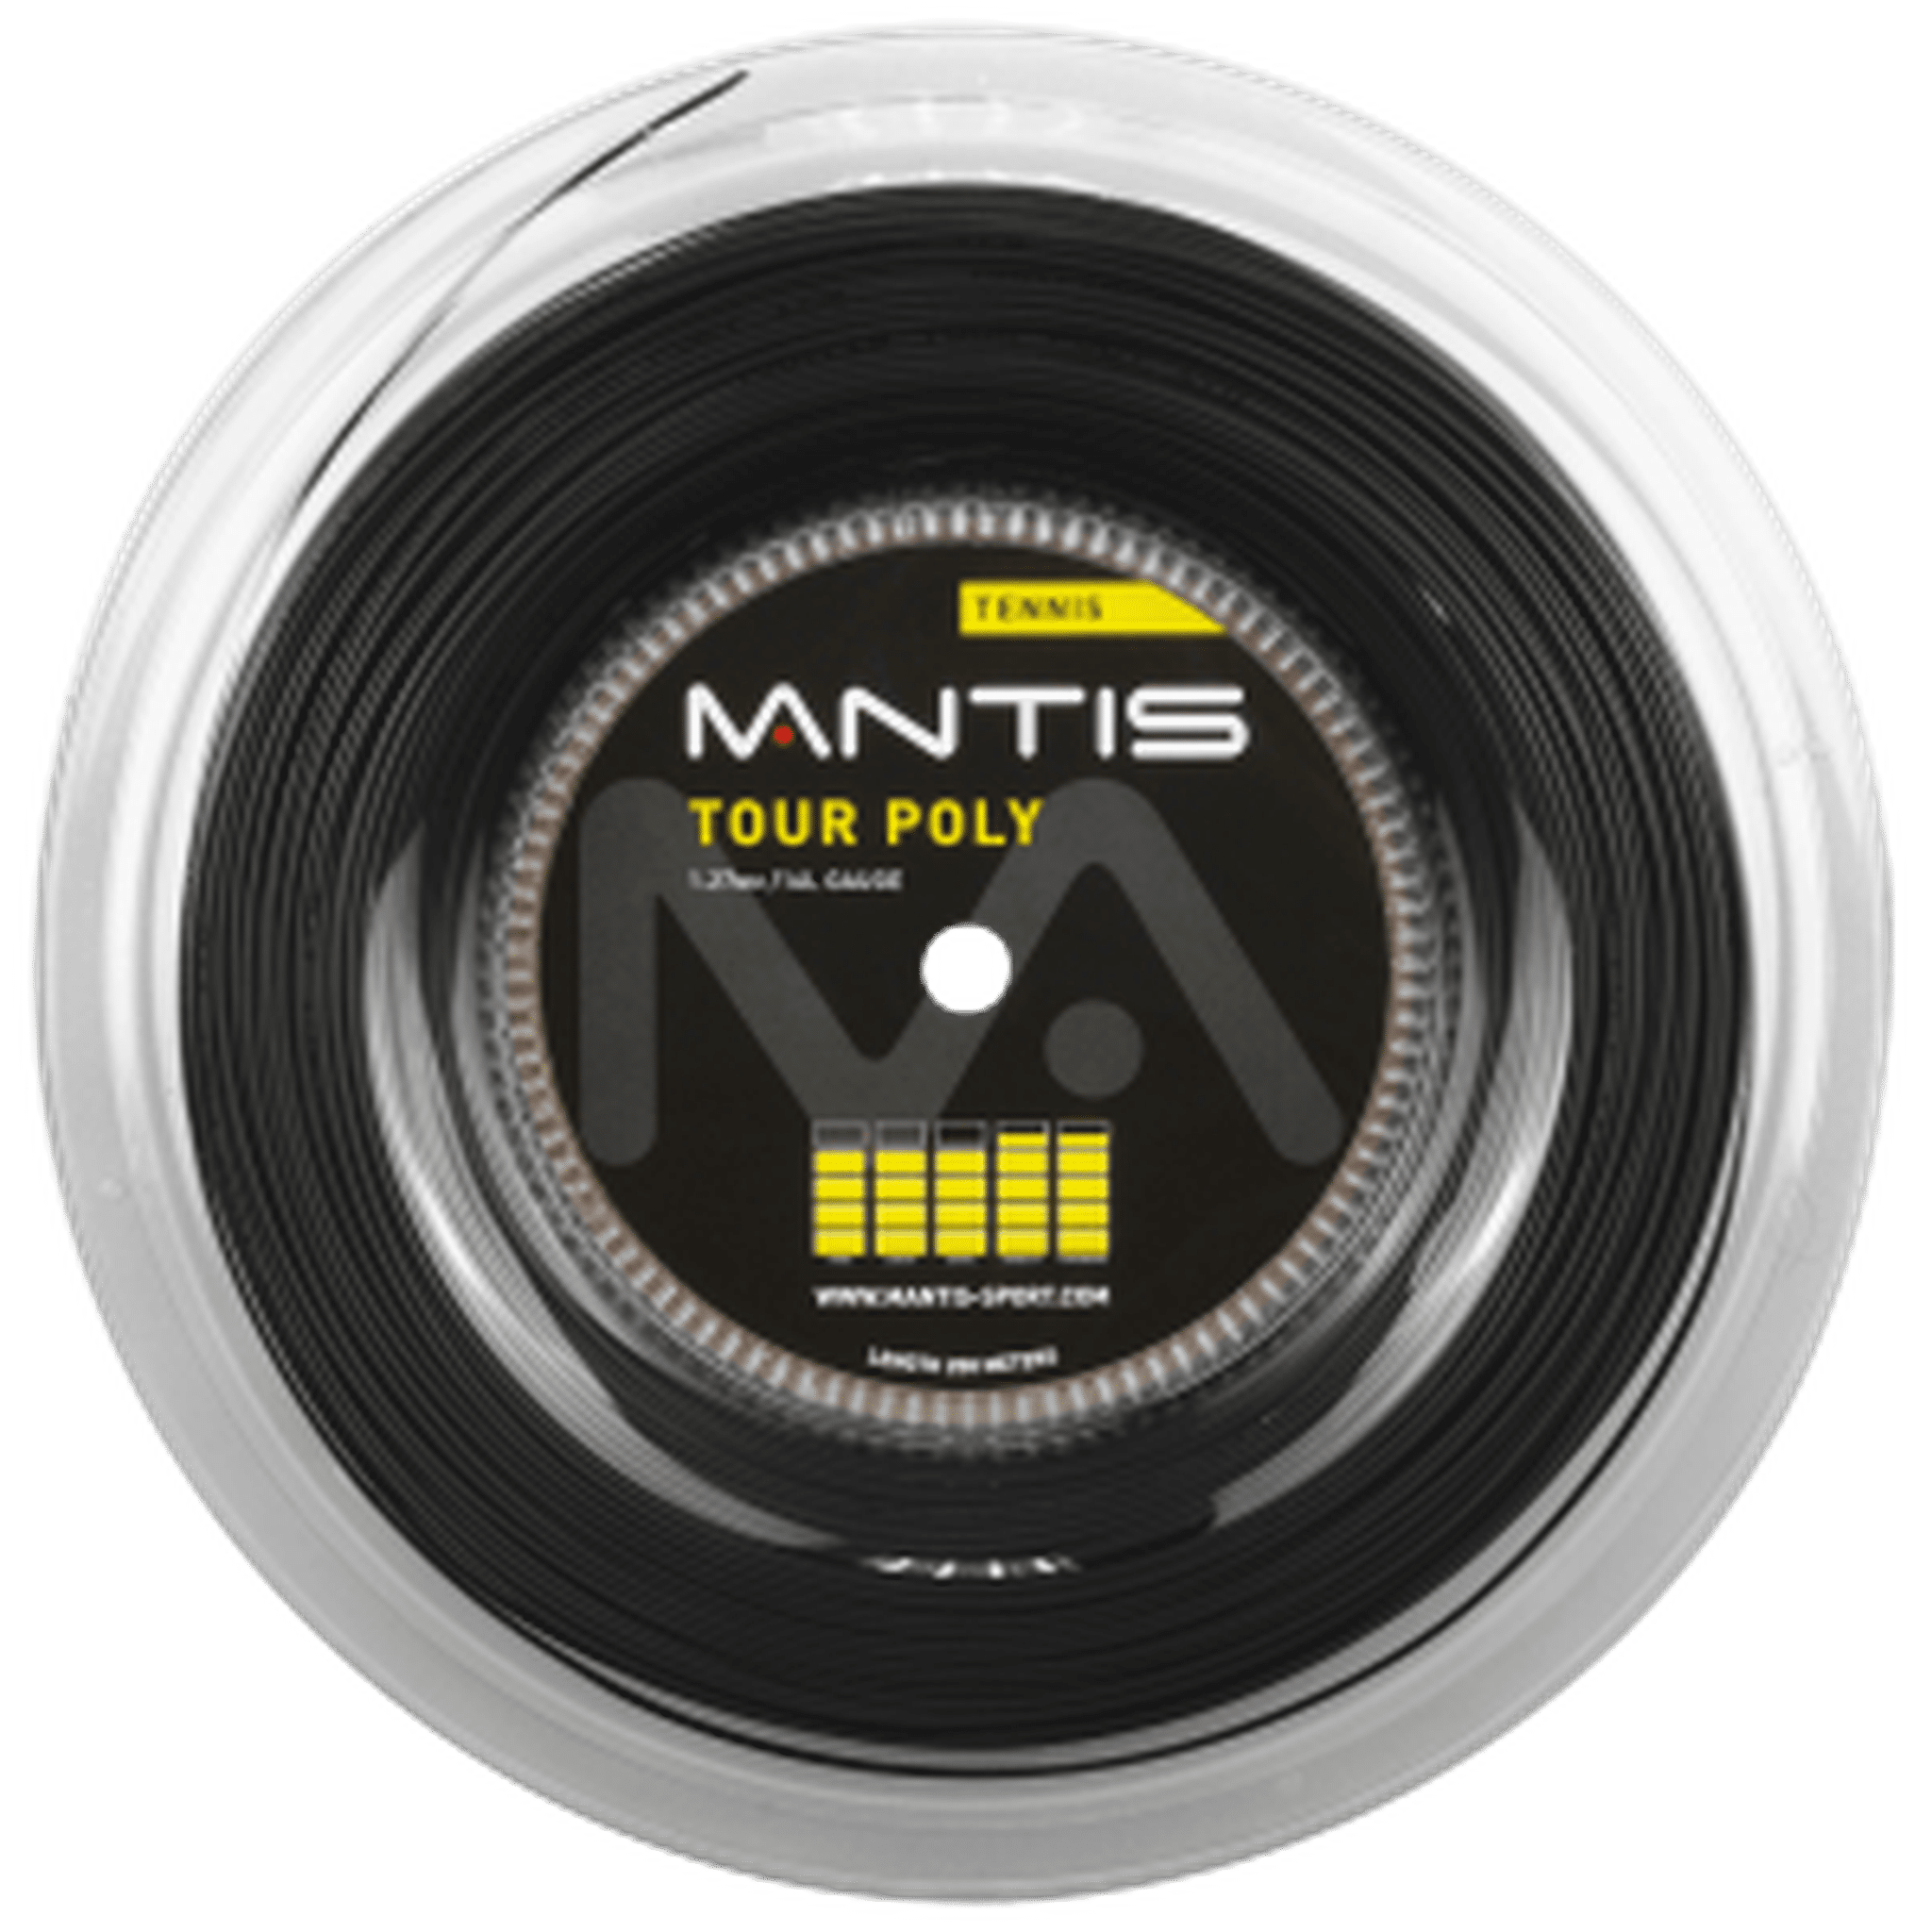 MANTIS Tour Polyester String 17 gauge - Reel 200m